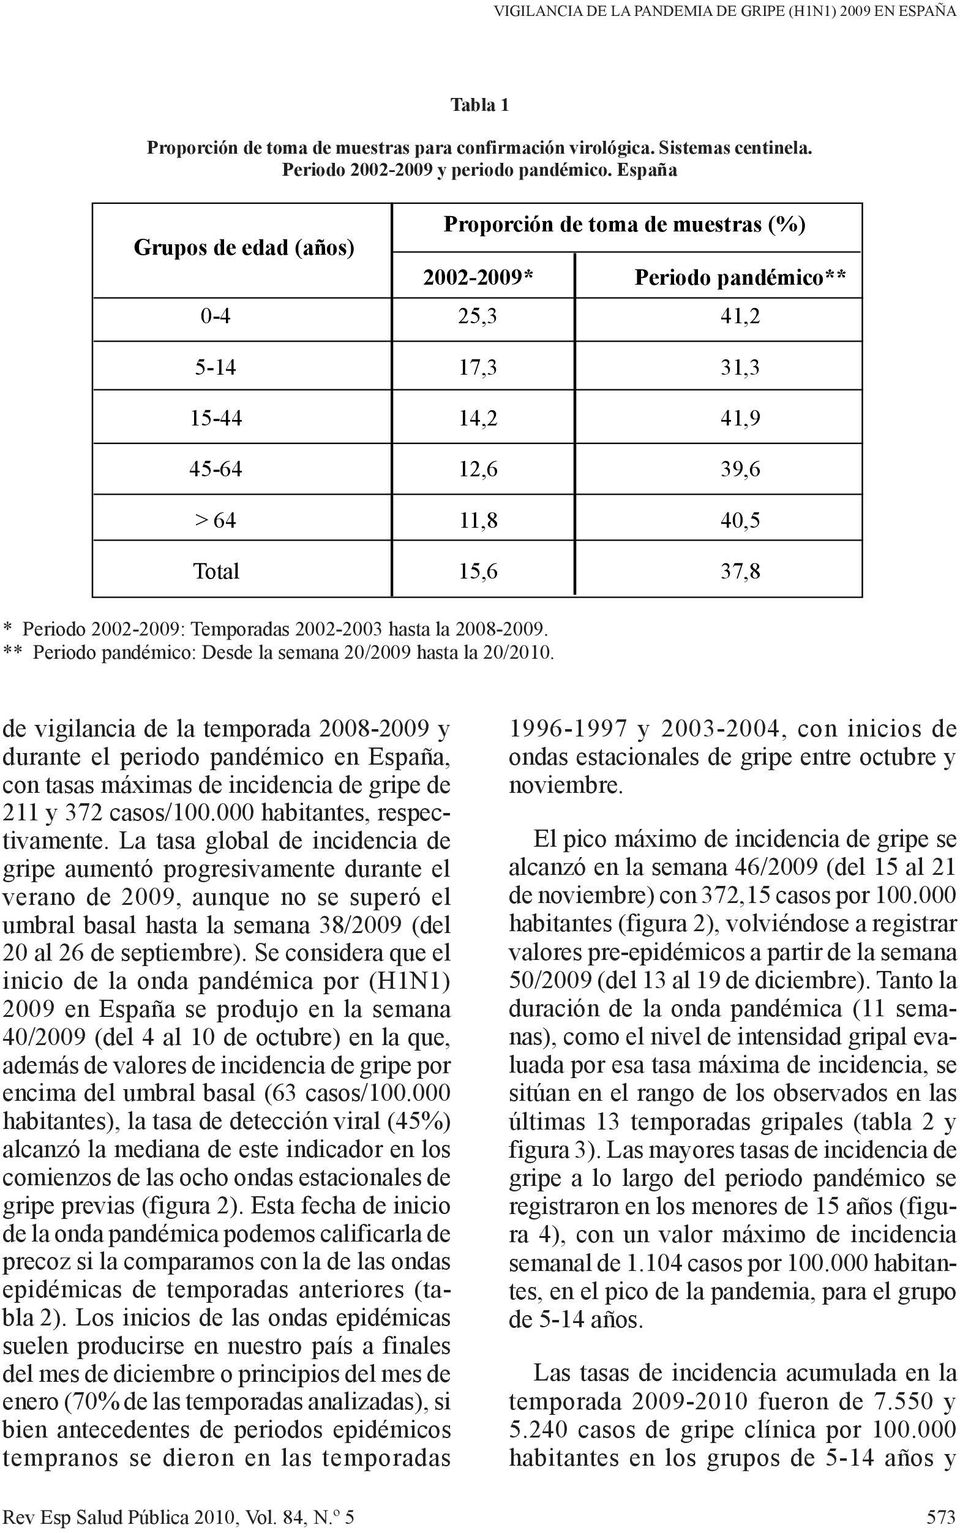 2002-2009: Temporadas 2002-2003 hasta la 2008-2009. ** Periodo pandémico: Desde la semana 20/2009 hasta la 20/2010.